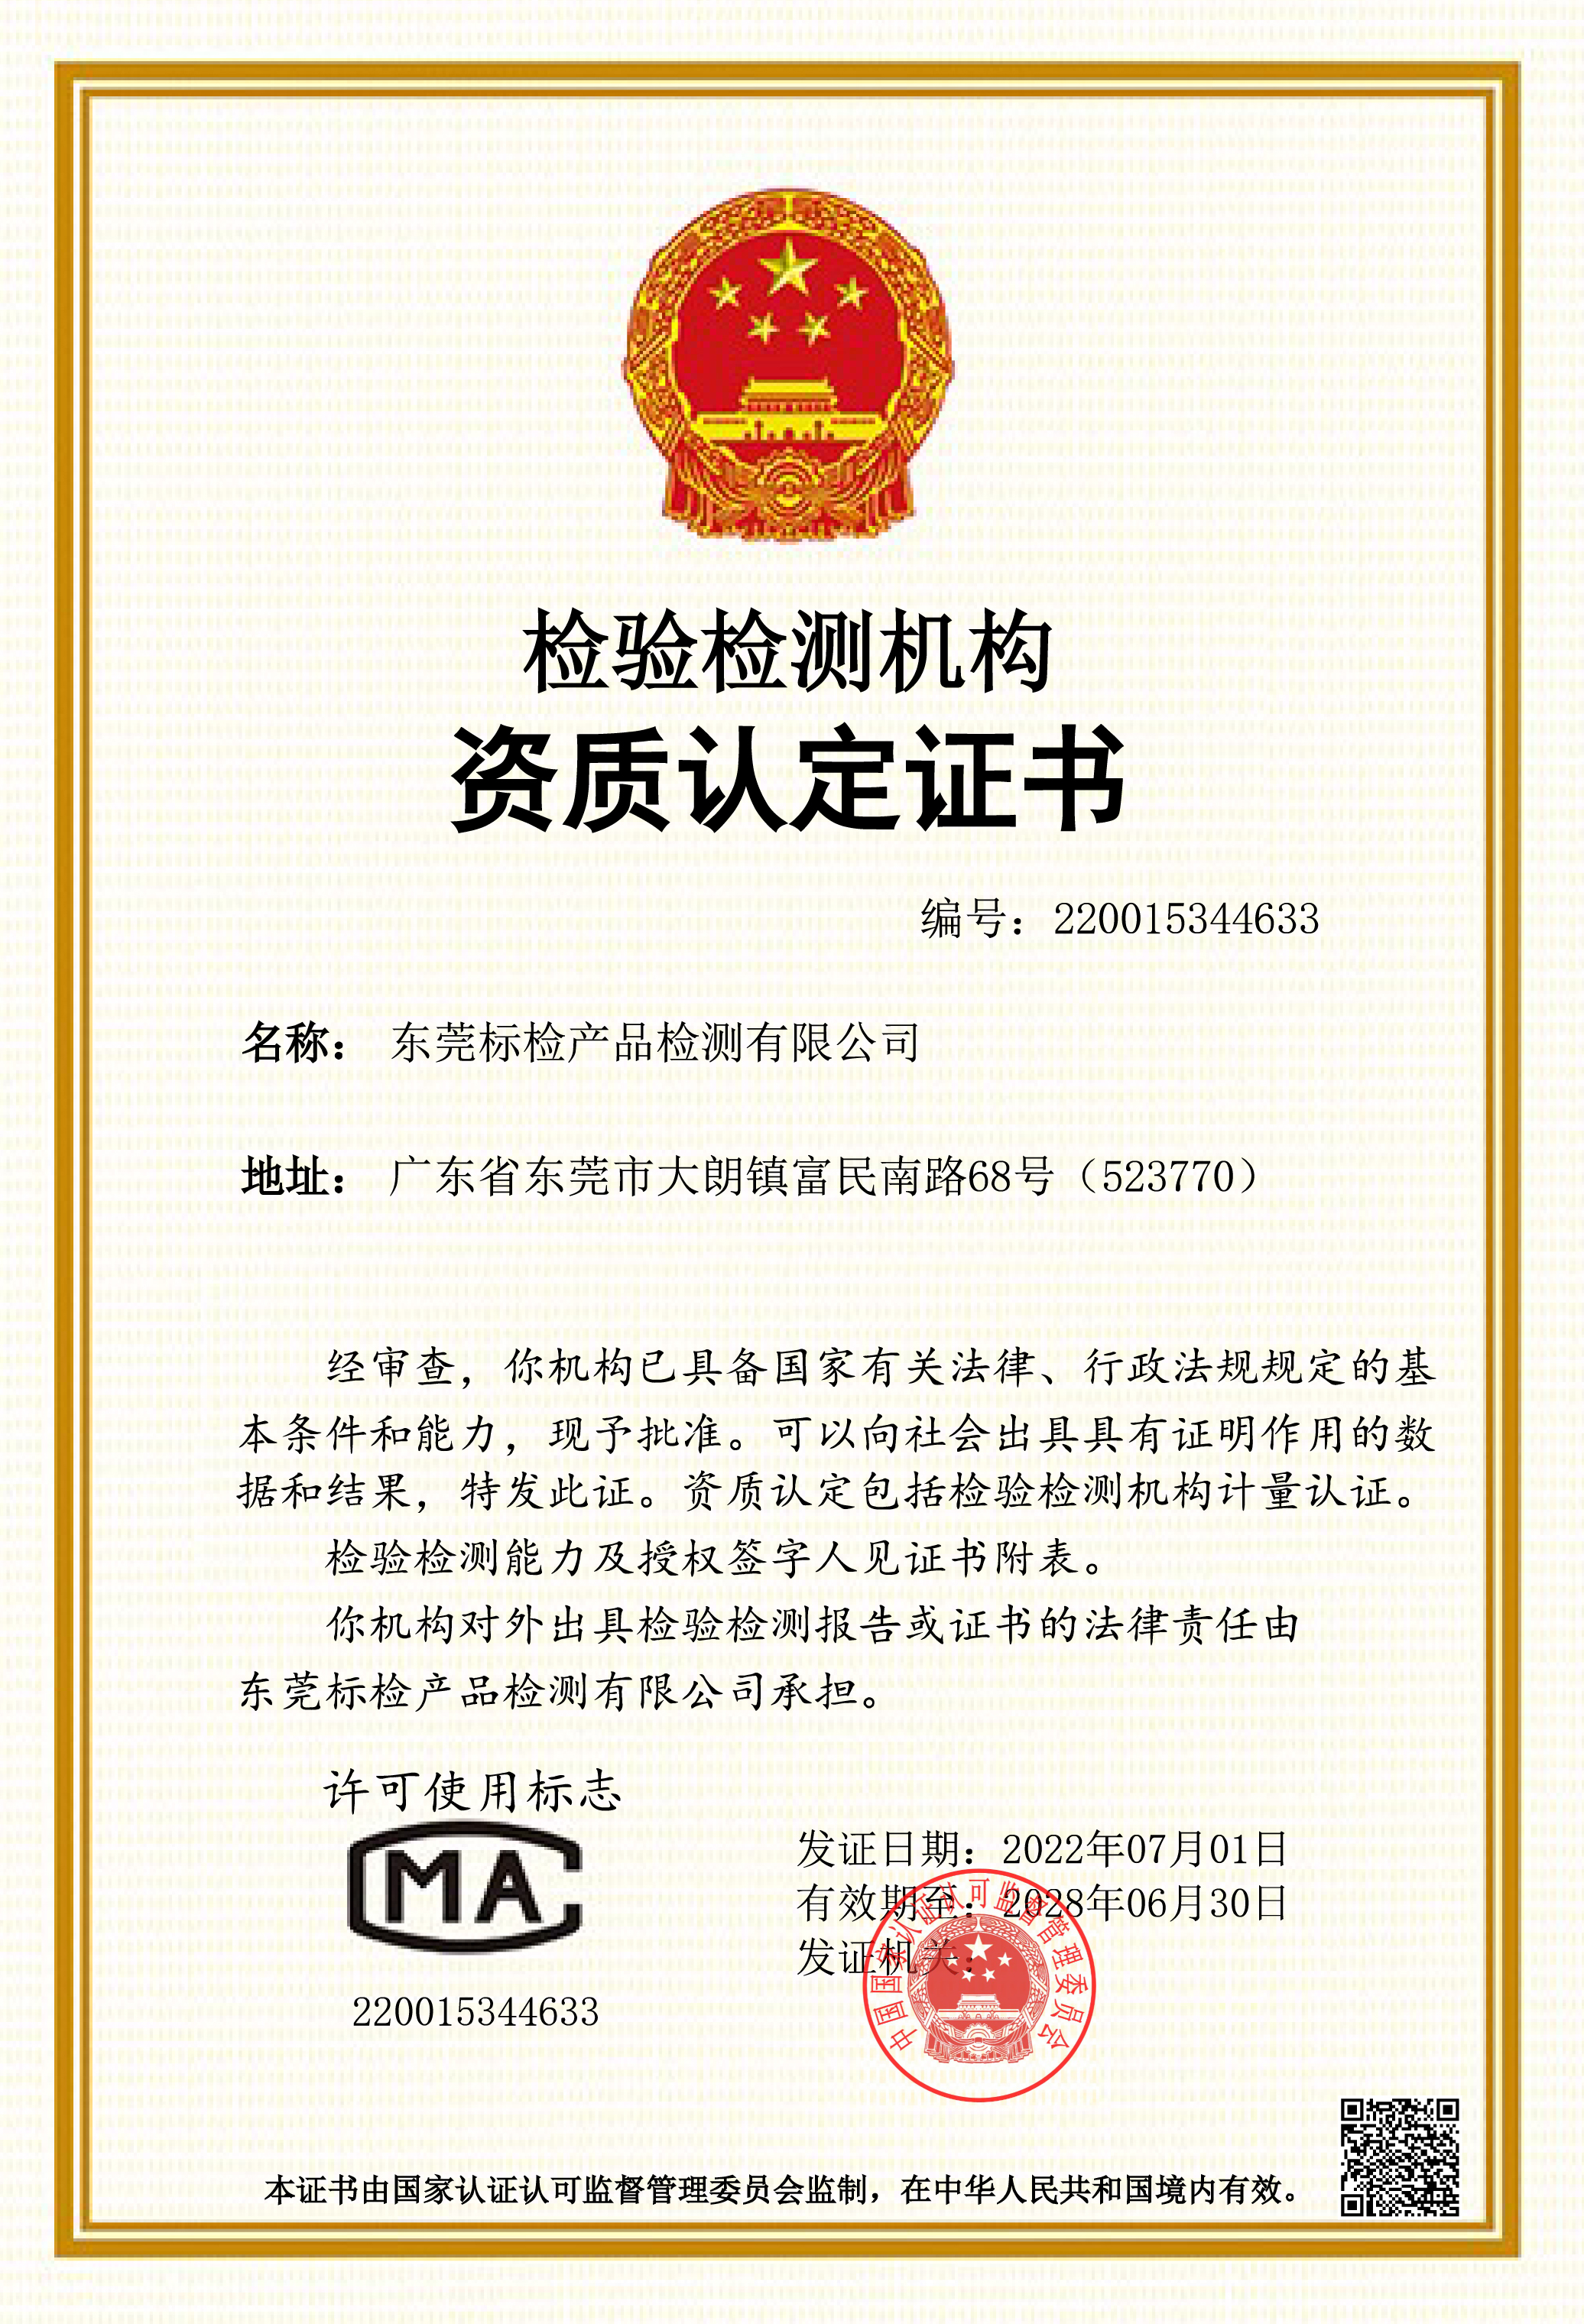 东莞标检成功获得国家级 cma 资质认定证书